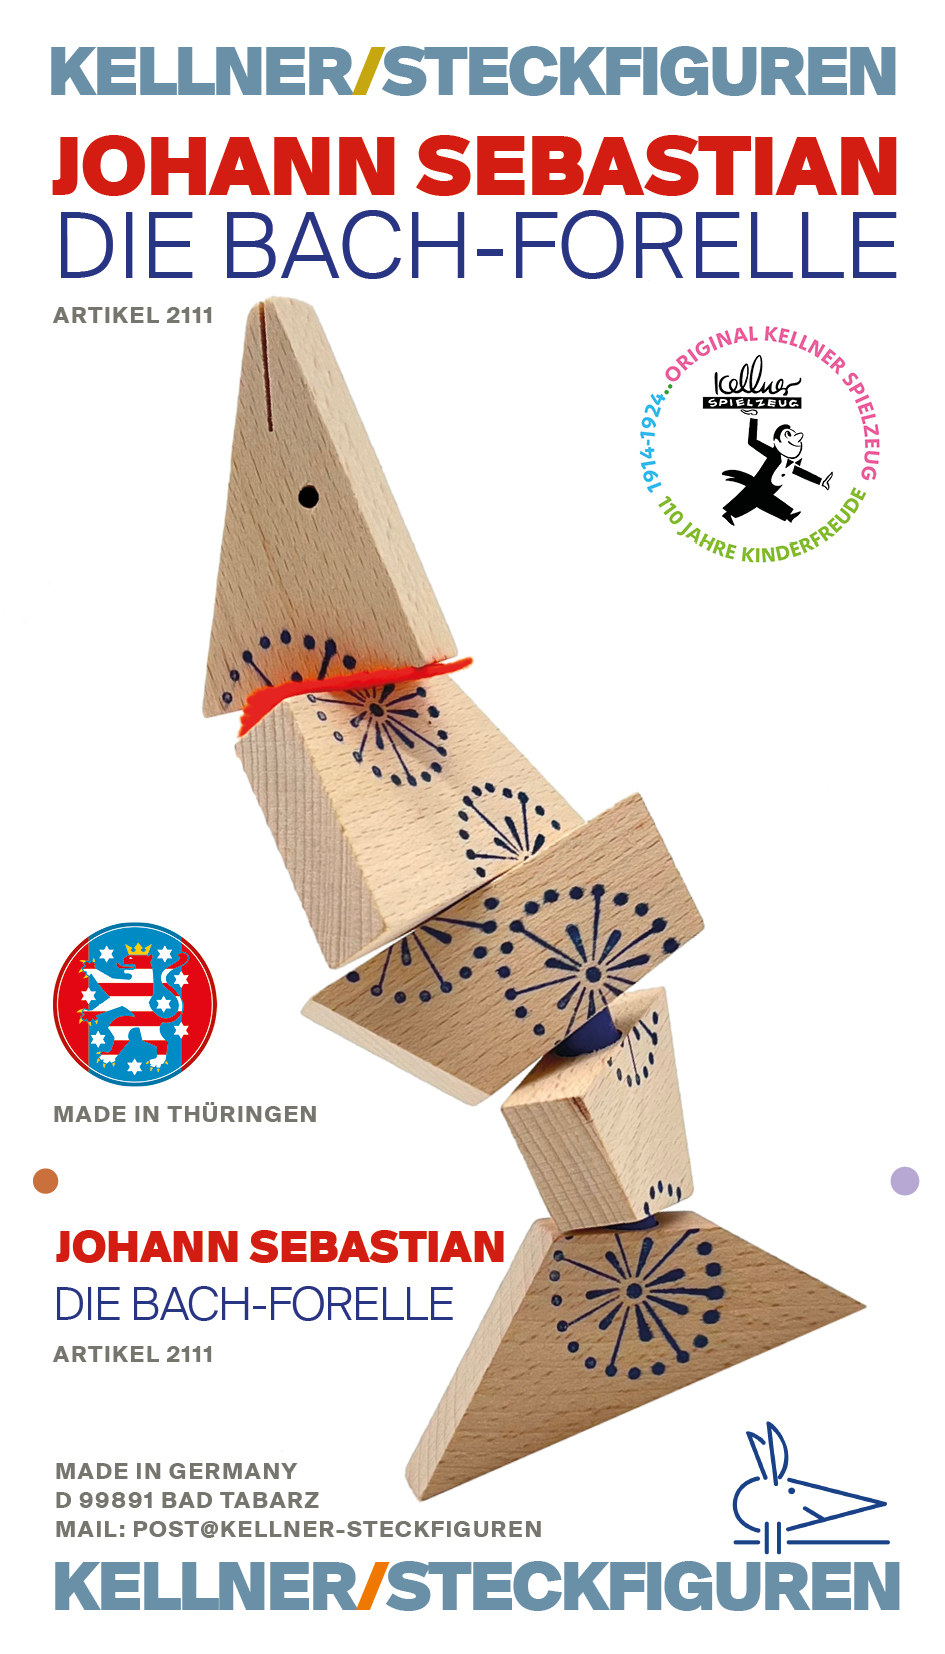  Johann Sebastian, die Bach-Forelle - Eine Kellner Steckfigur